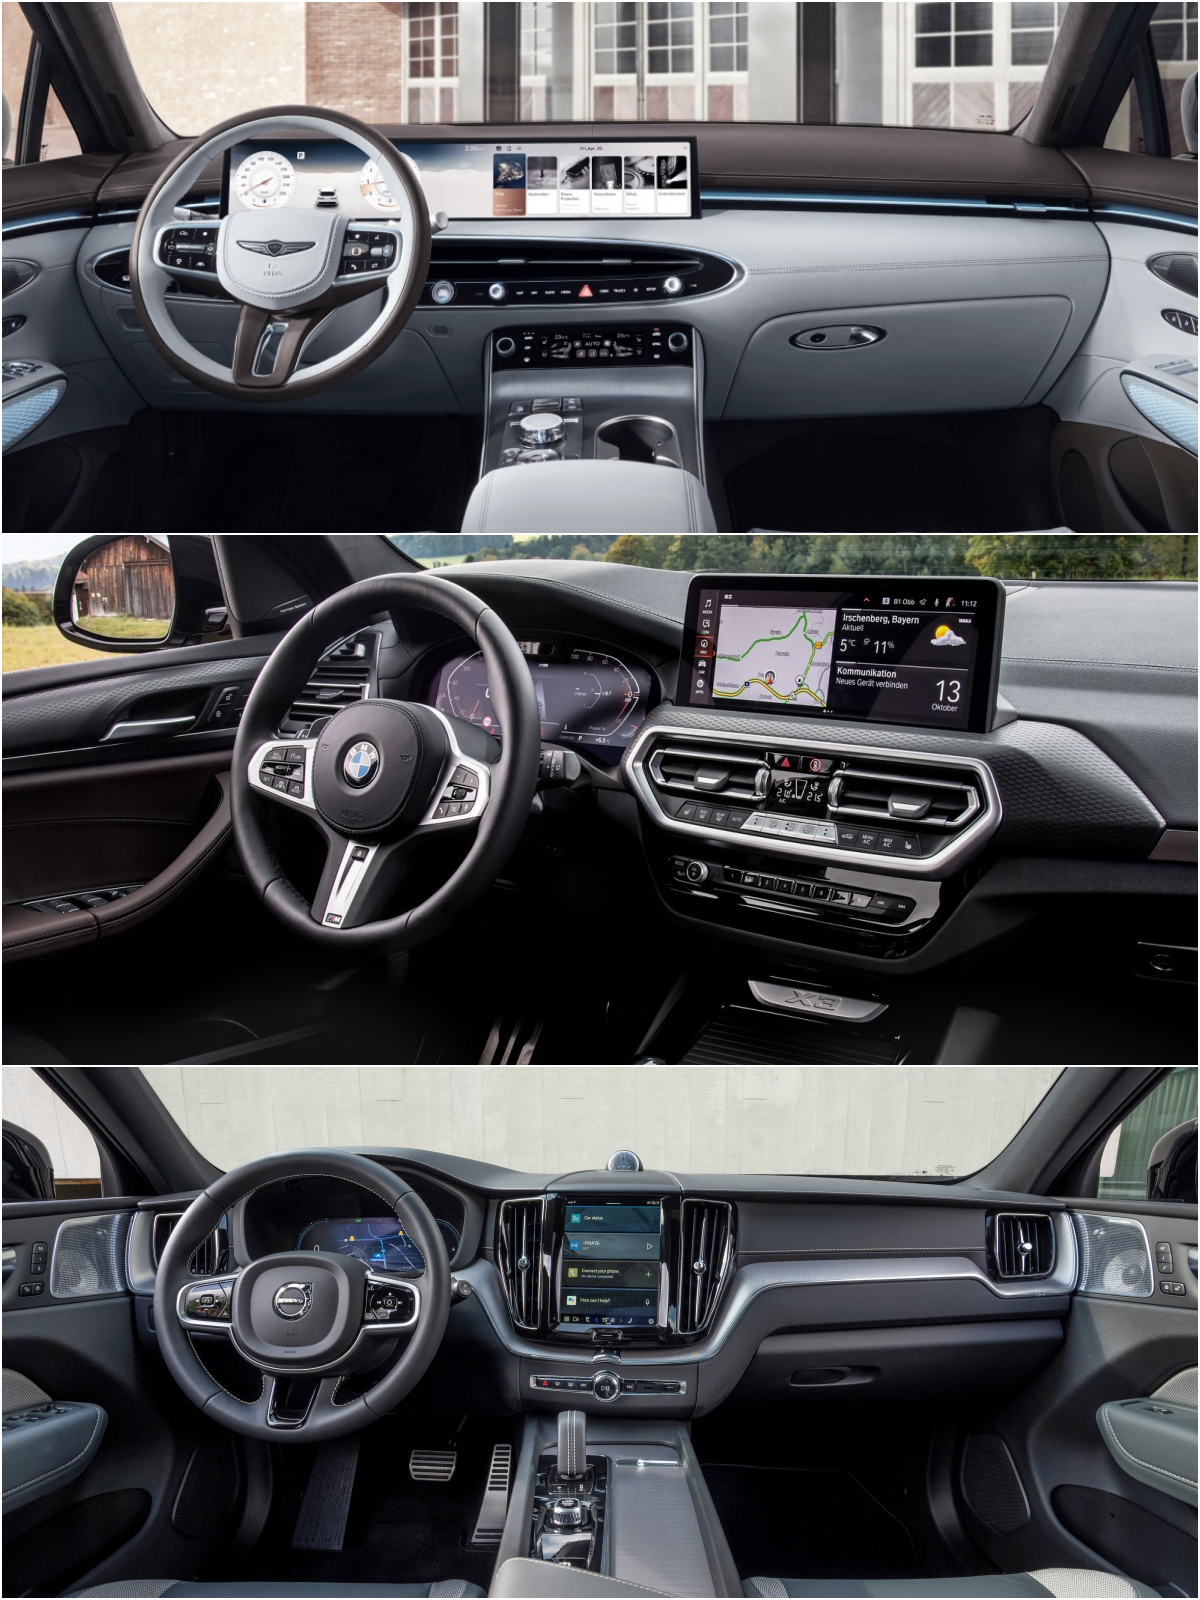 위부터 제네시스 GV70, BMW X3, 볼보 XC60 차량 '내부' 이미지이다.